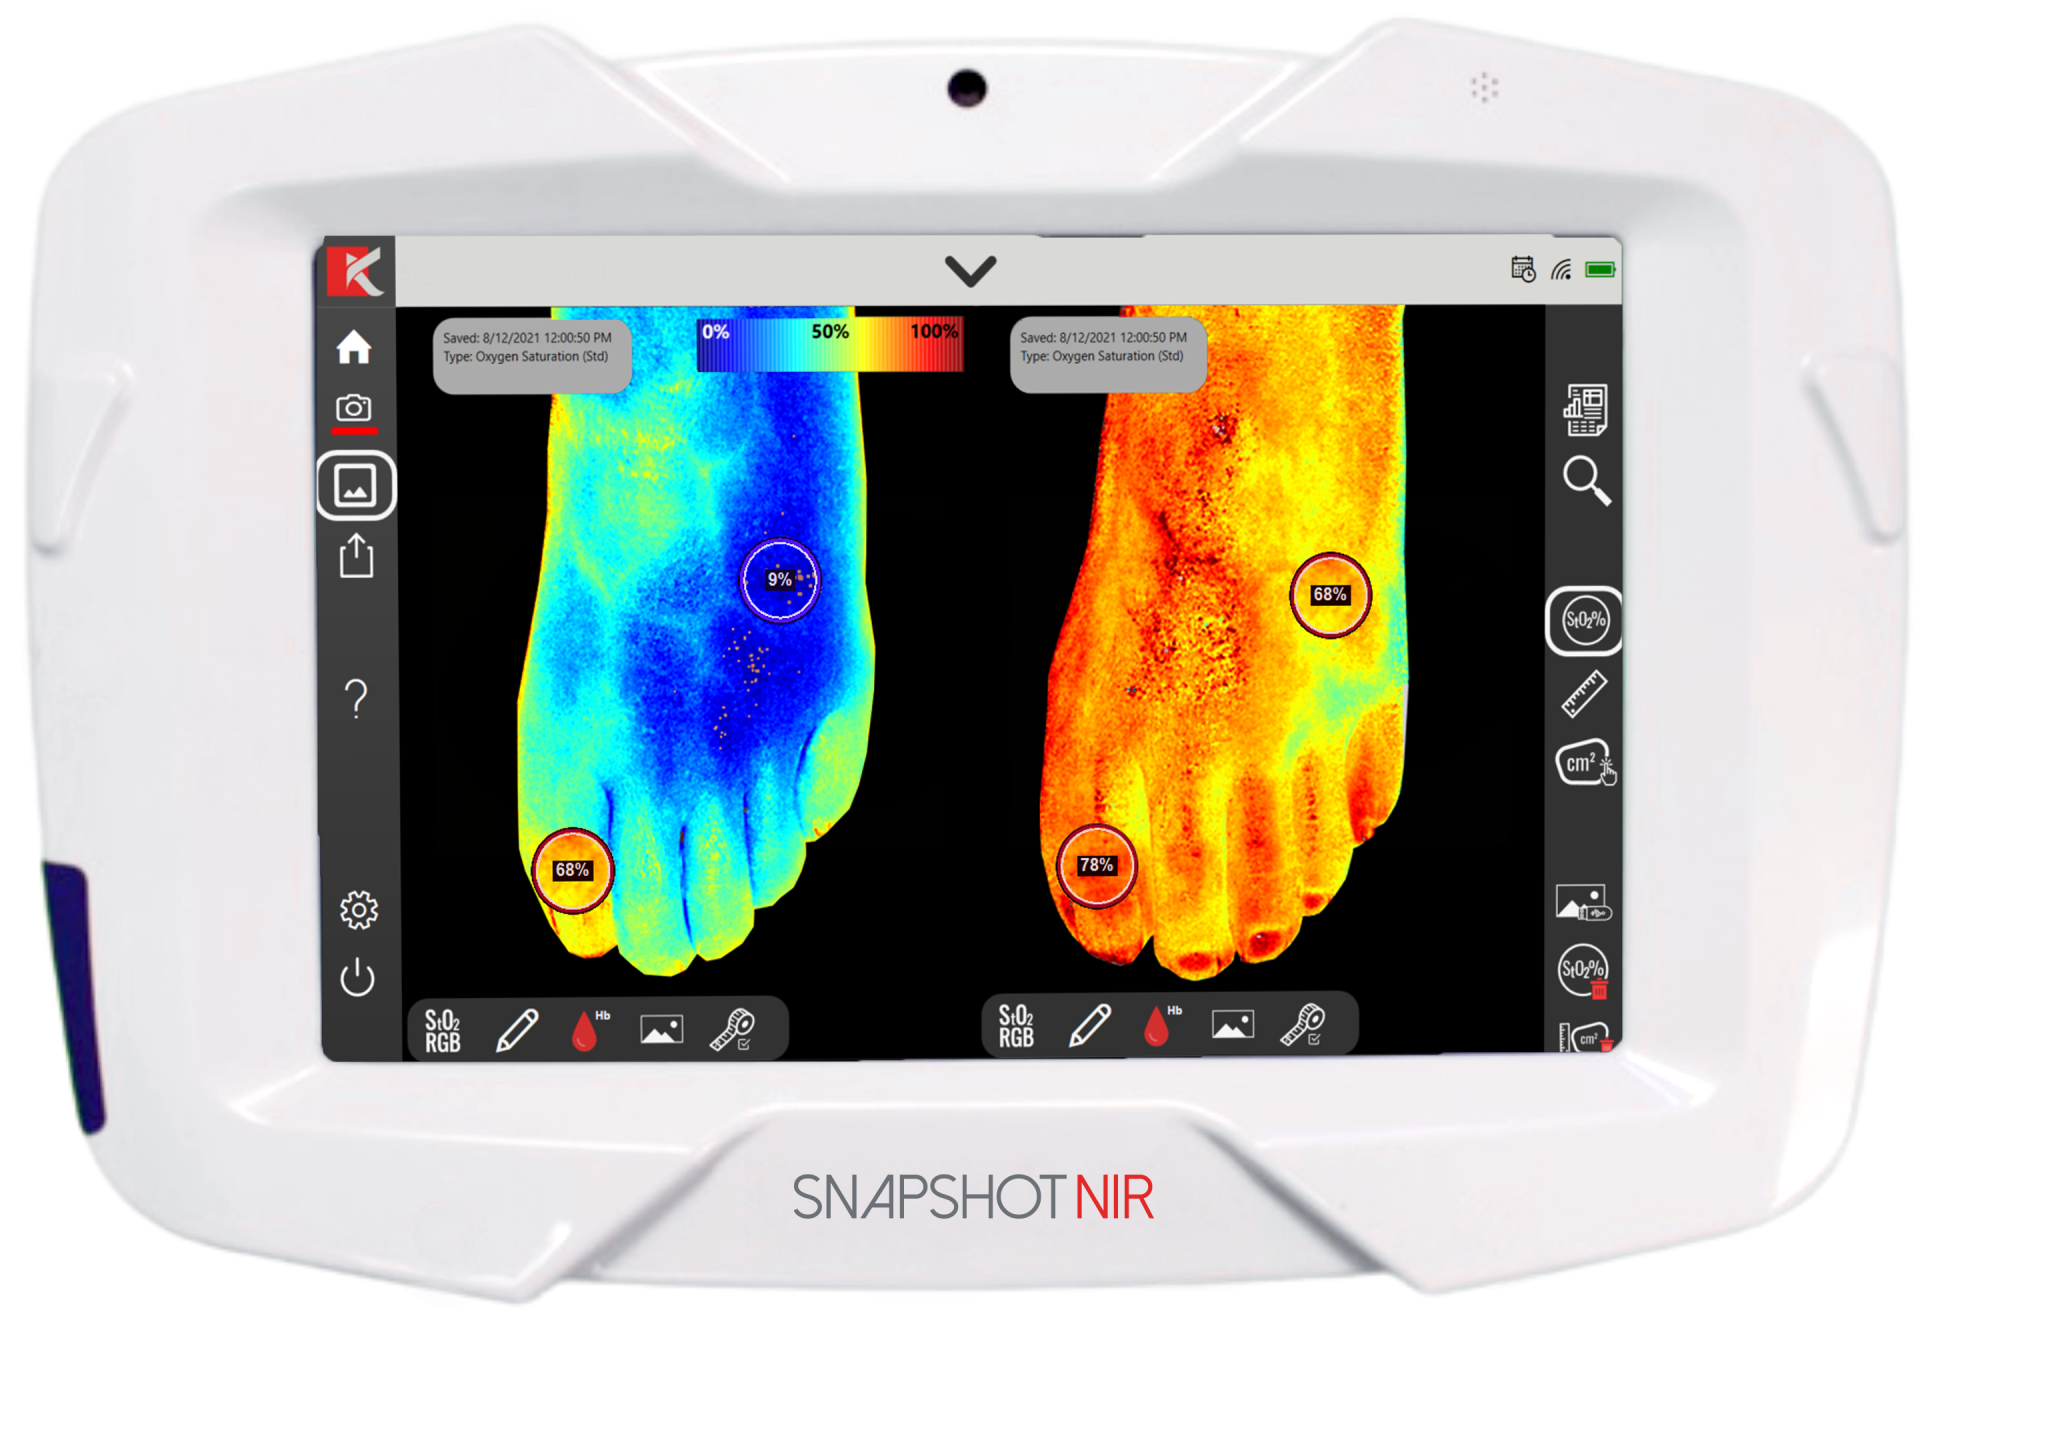 Bærbar diagnostisk enhet "Snapshot NIR" skal erstatte ultralyd og røntgen